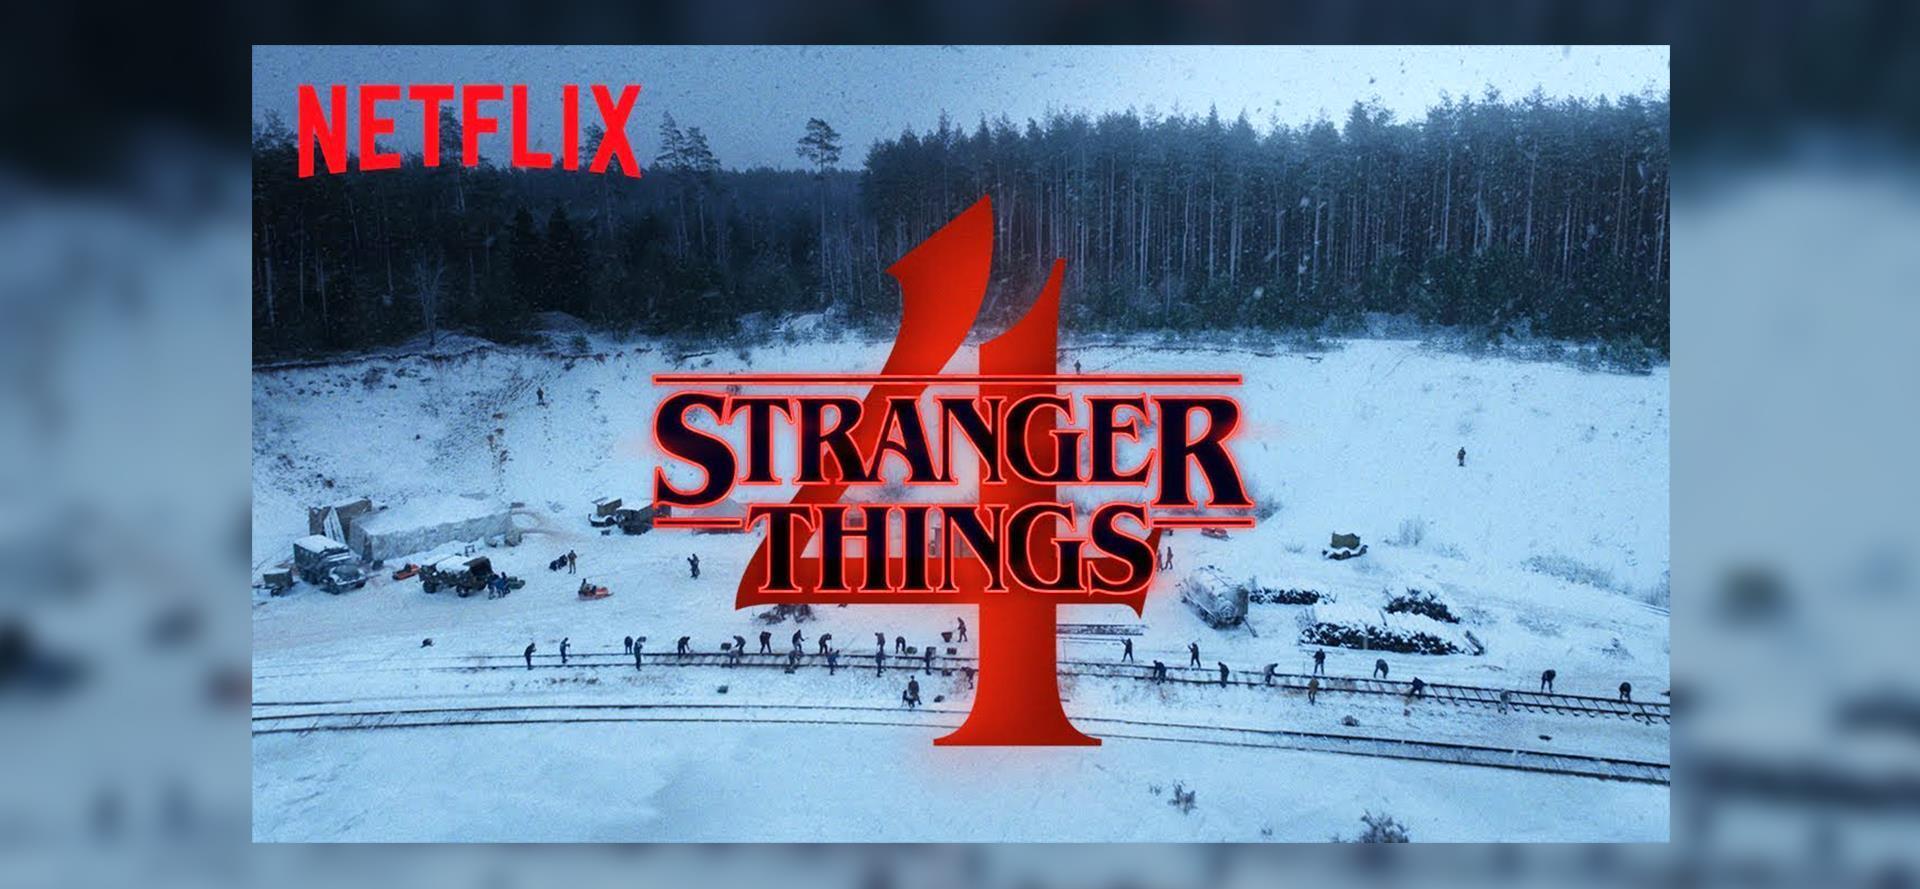 Május 27-én érkezik a Stranger Things negyedik évadja a Netflixre